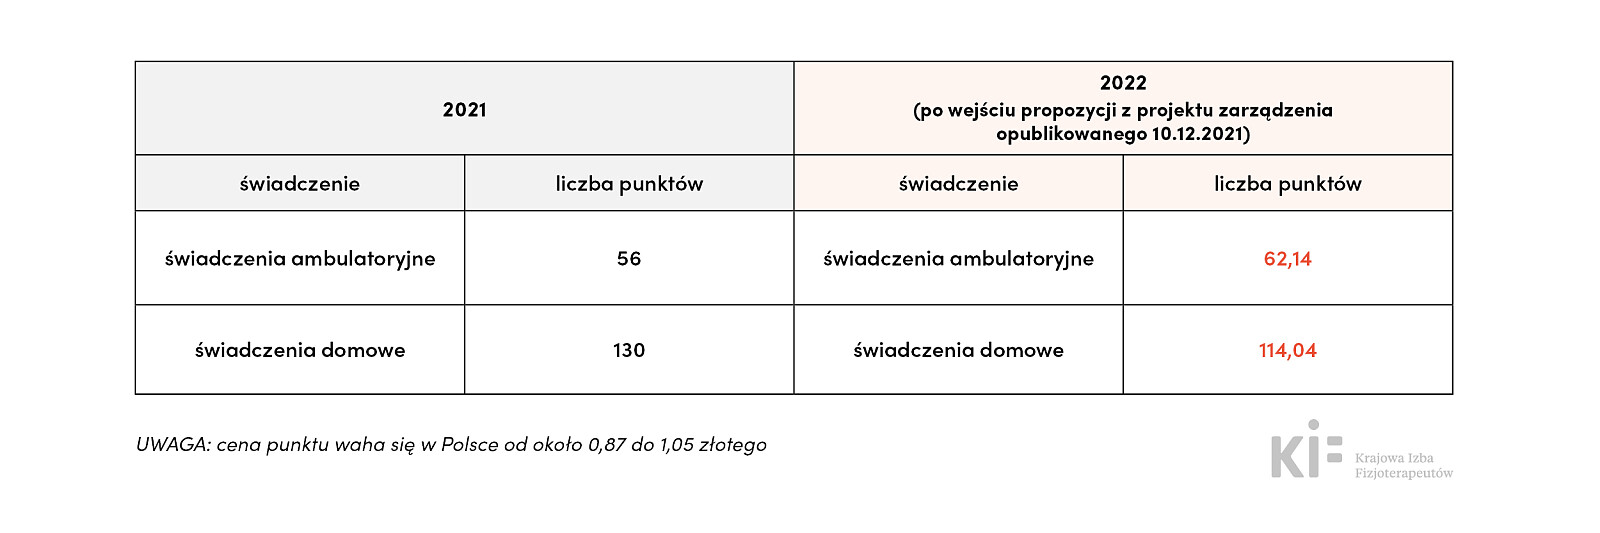 Propozycje zawarte w projekcie NFZ (kif.info.pl)